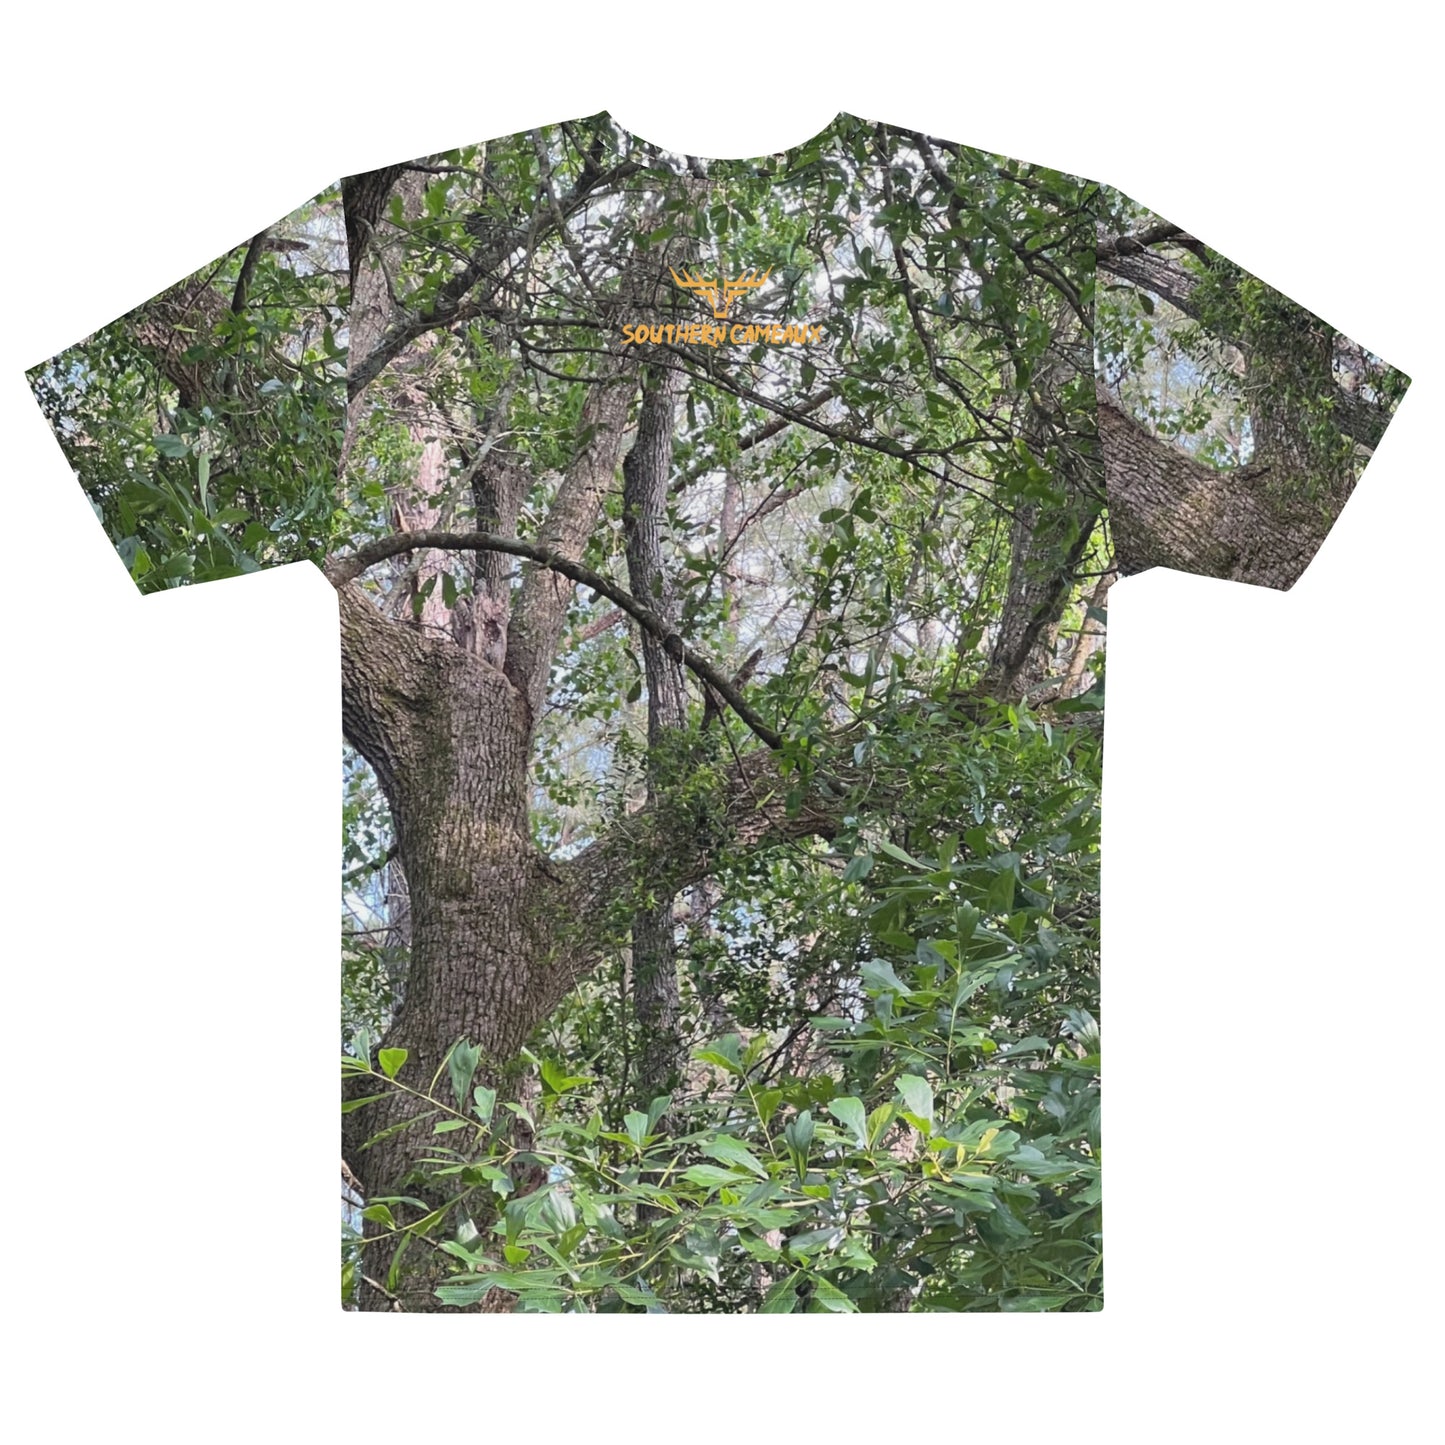 Southern Cameaux Green Oak Men's t-shirt